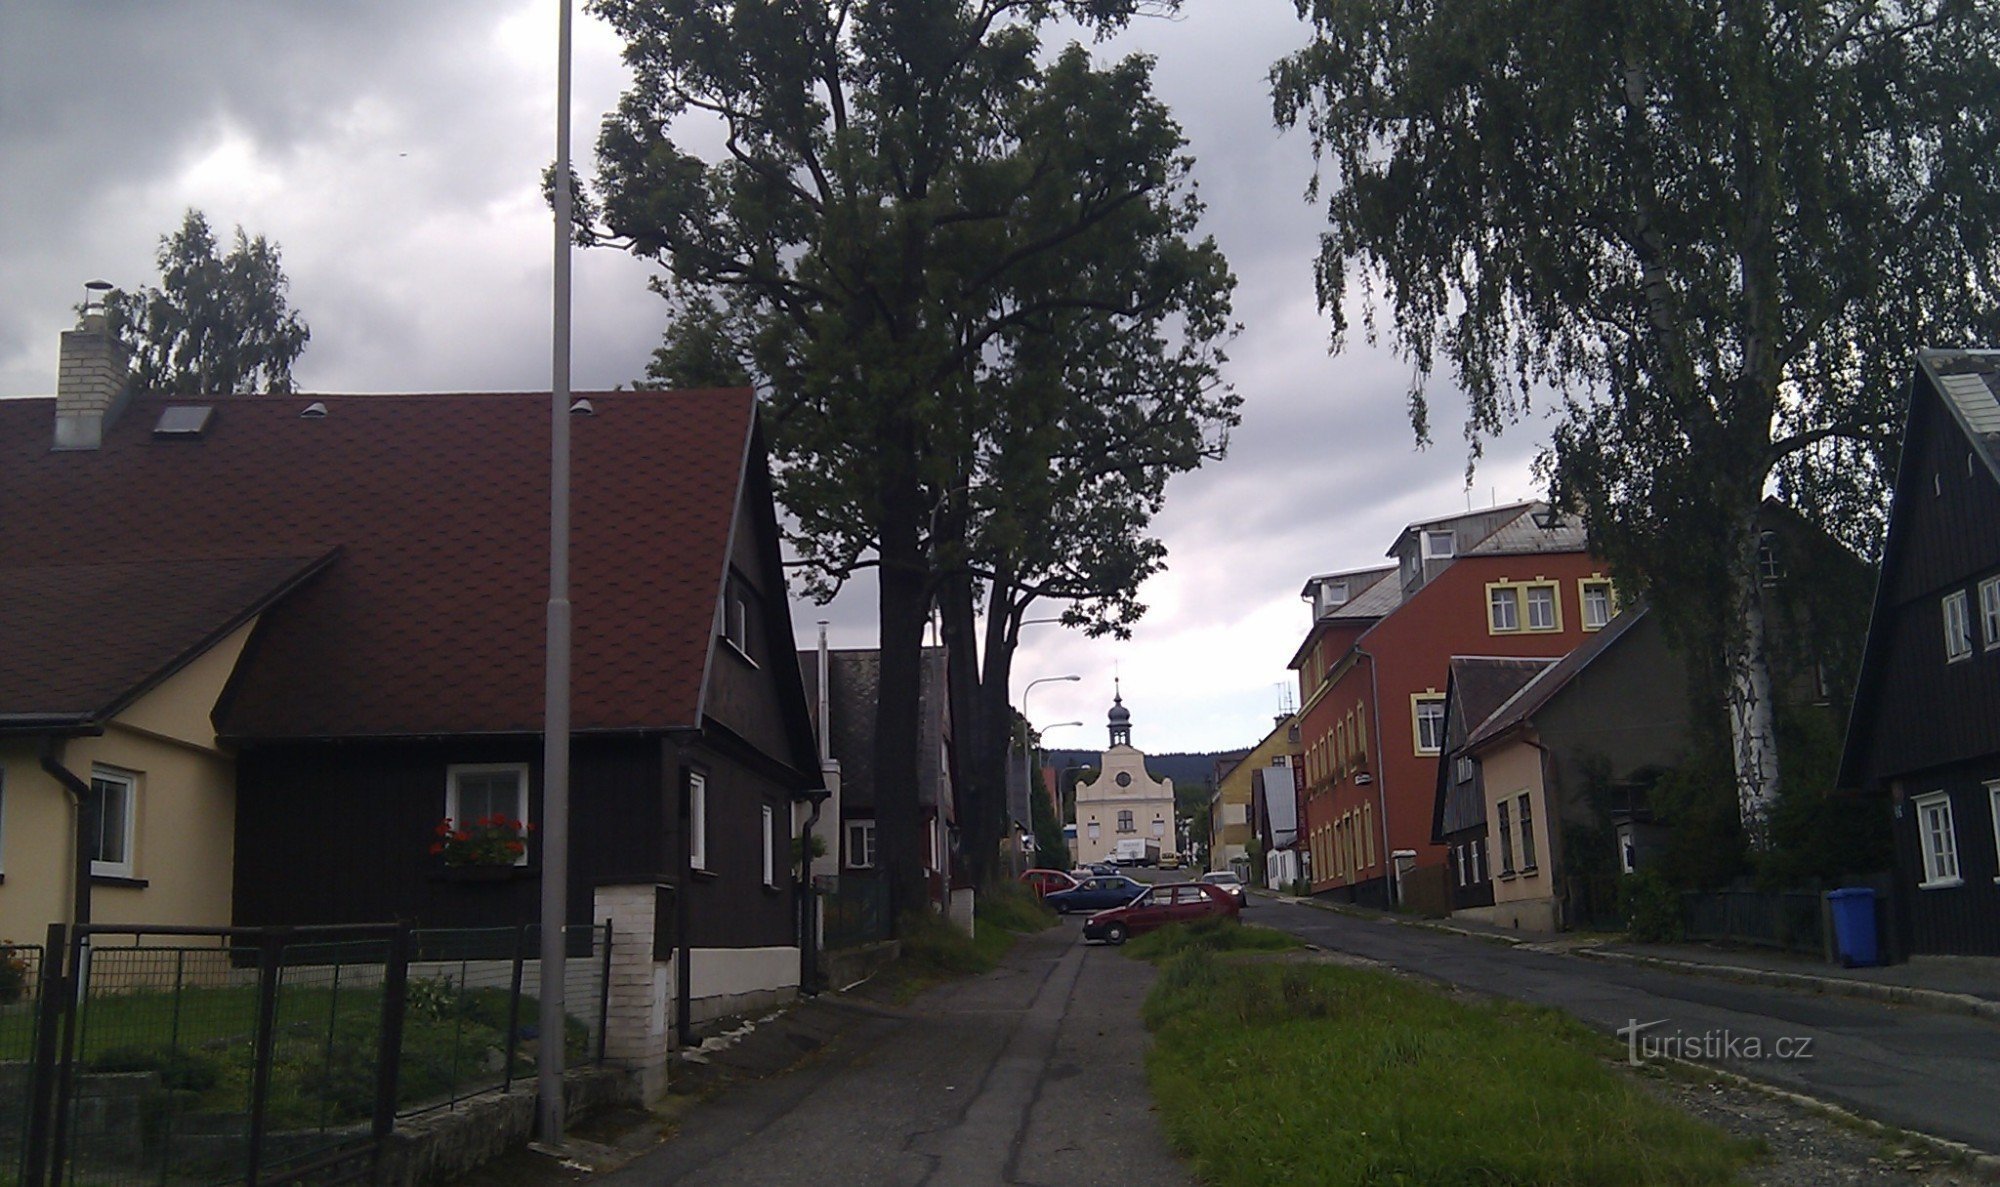 Rue Volgogradska, Liberec